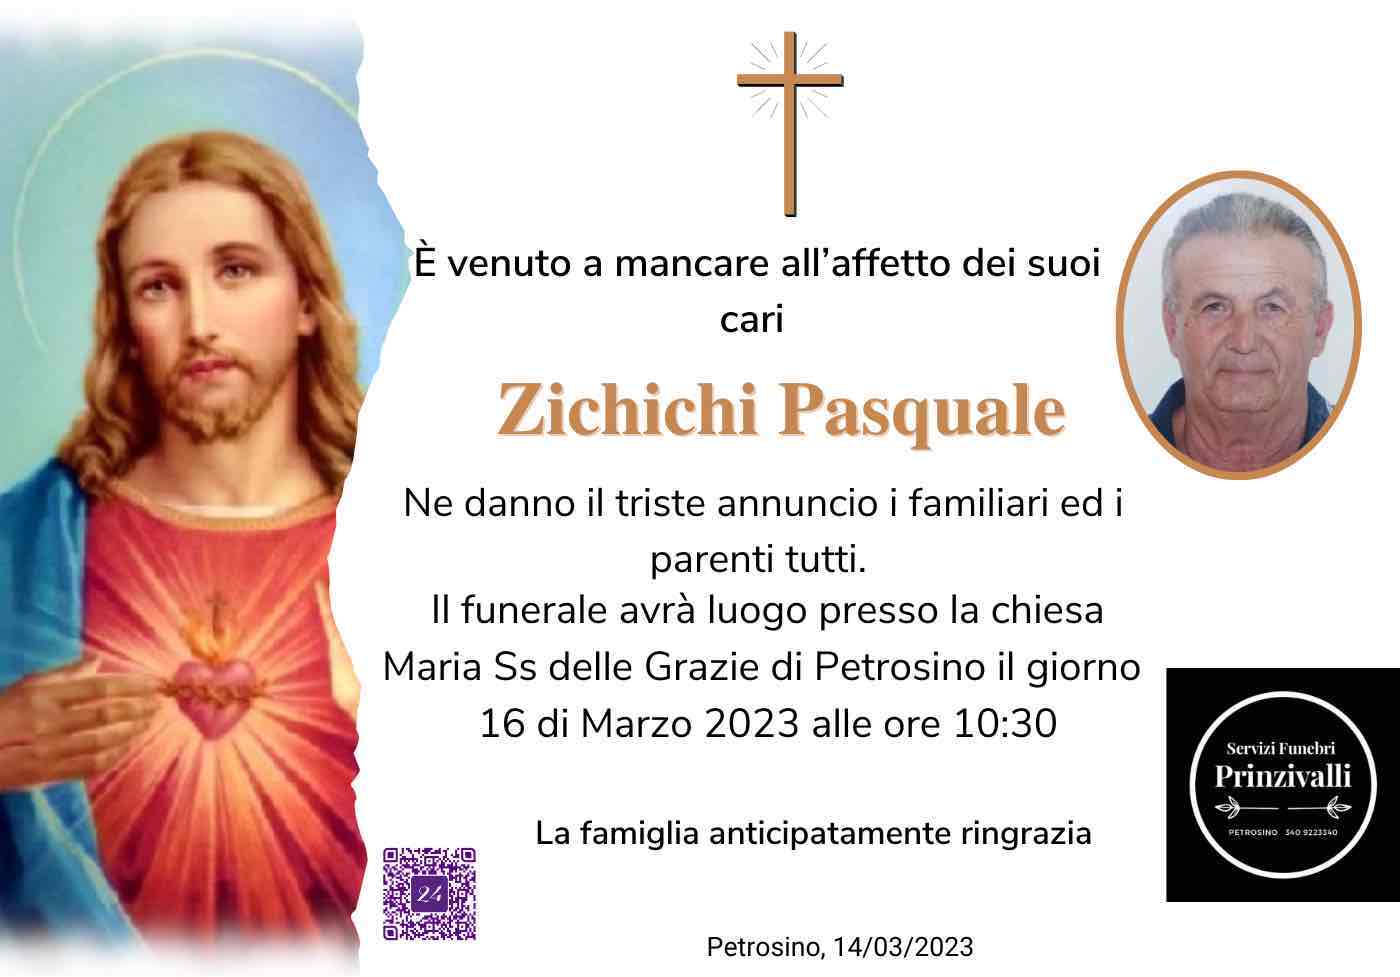 Pasquale Zichichi